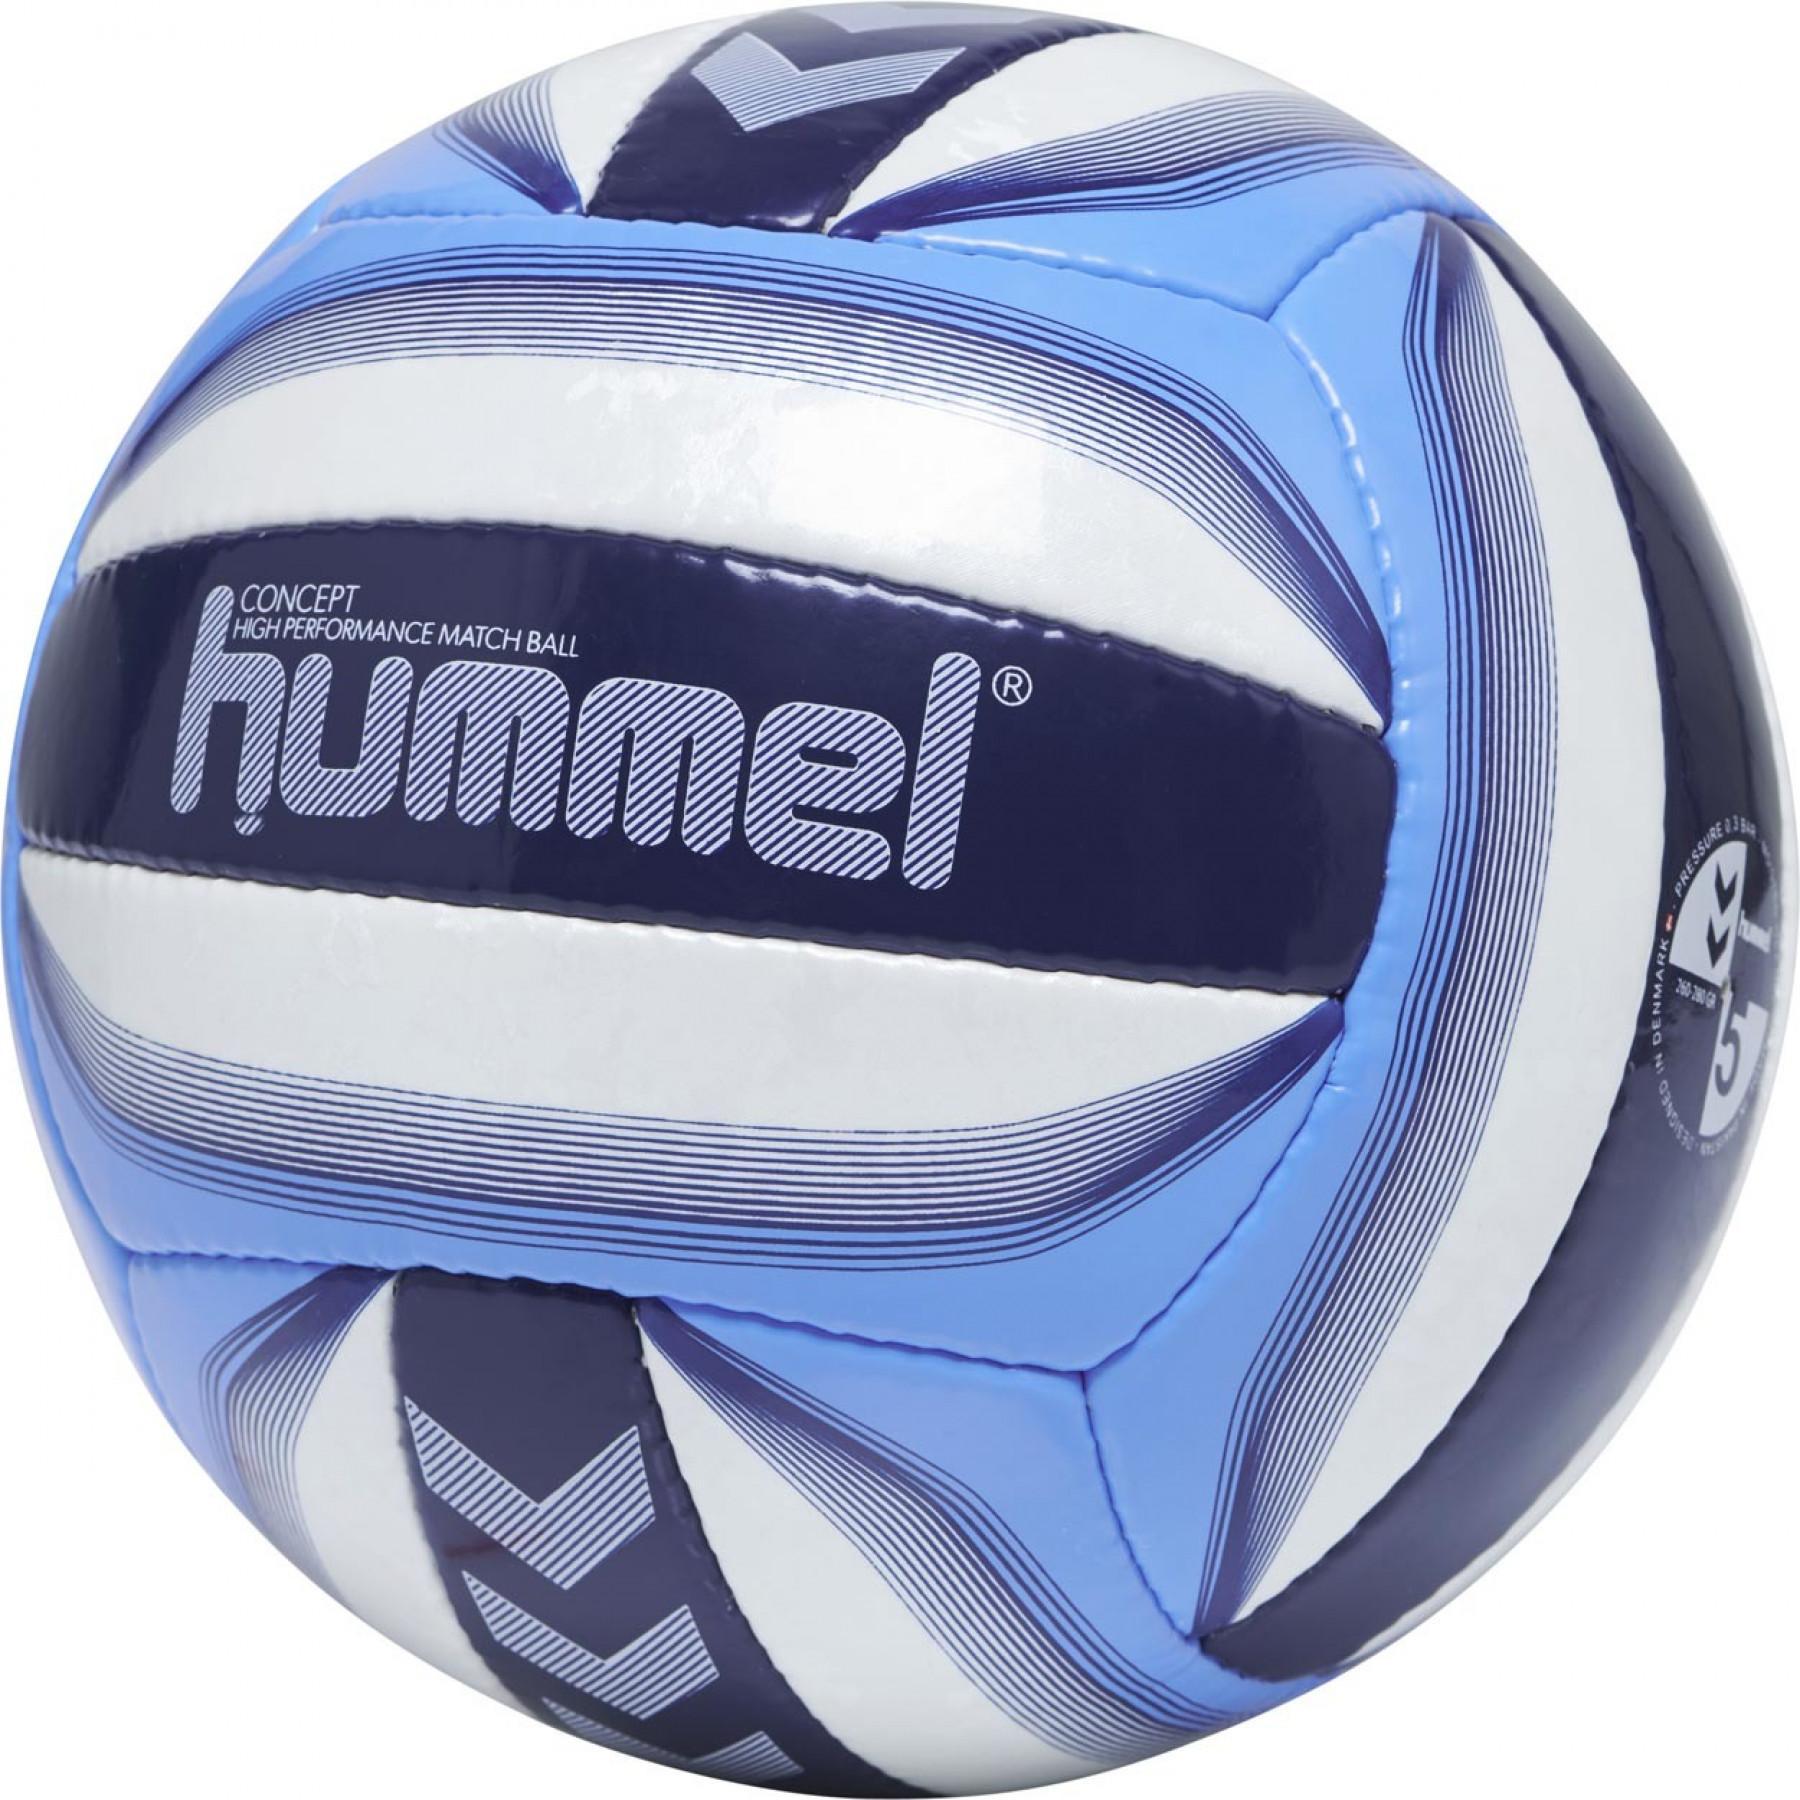 Opakowanie 10 balonów Hummel Concept [Taille5]